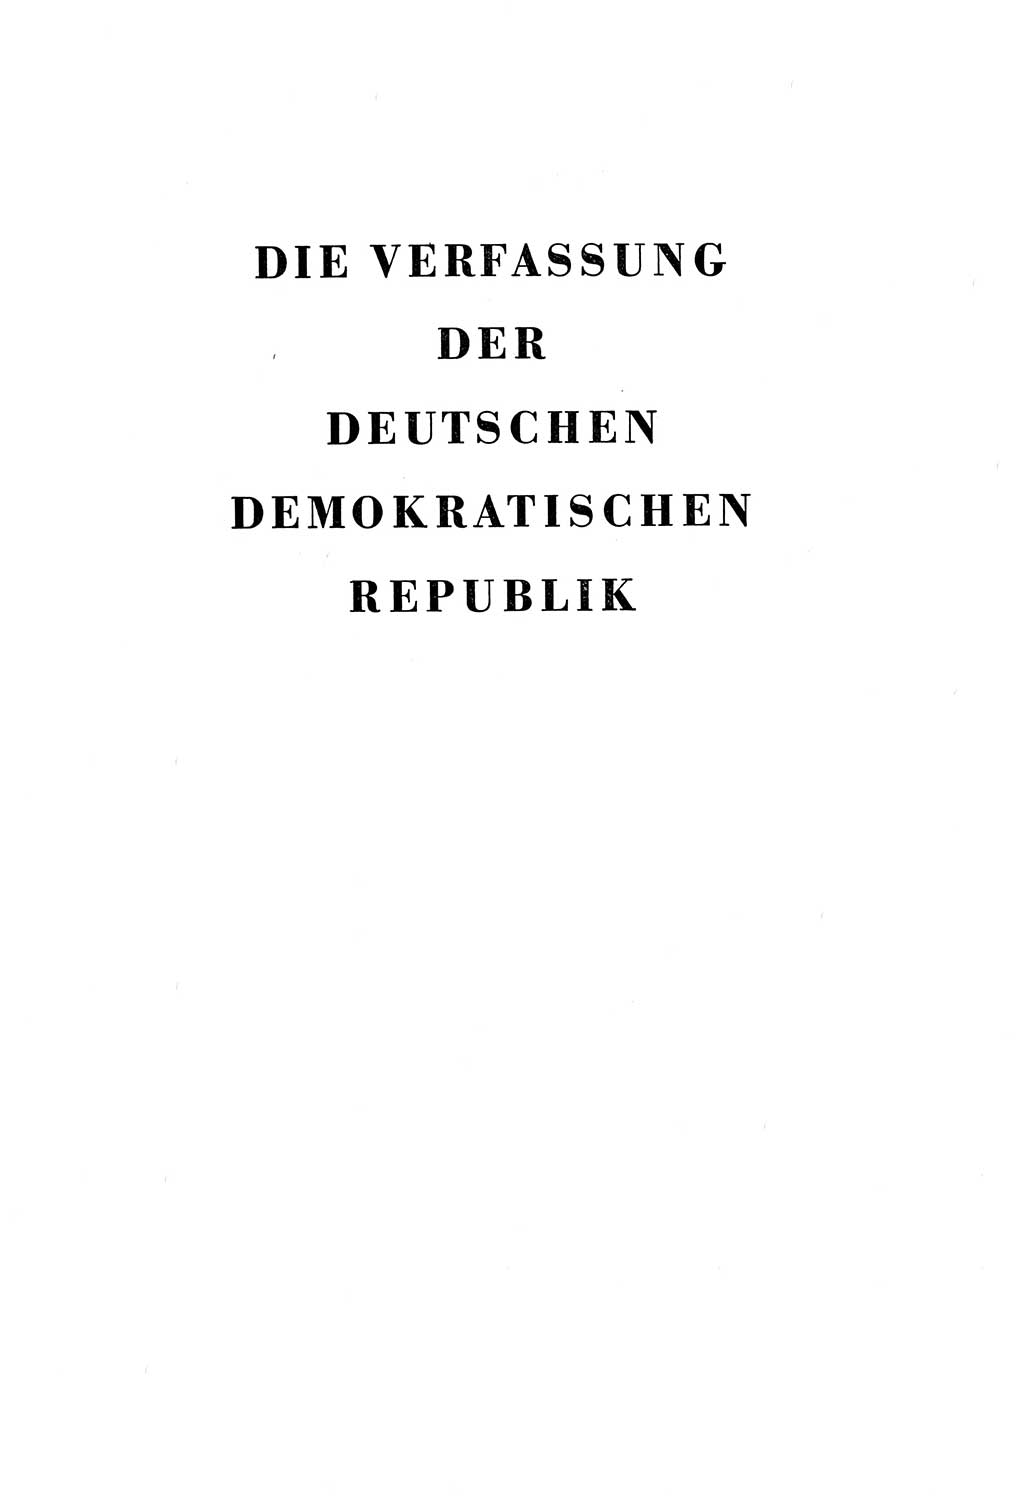 Verfassung der Deutschen Demokratischen Republik (DDR) vom 7. Oktober 1949, Seite 3 (Verf. DDR 1949, S. 3)